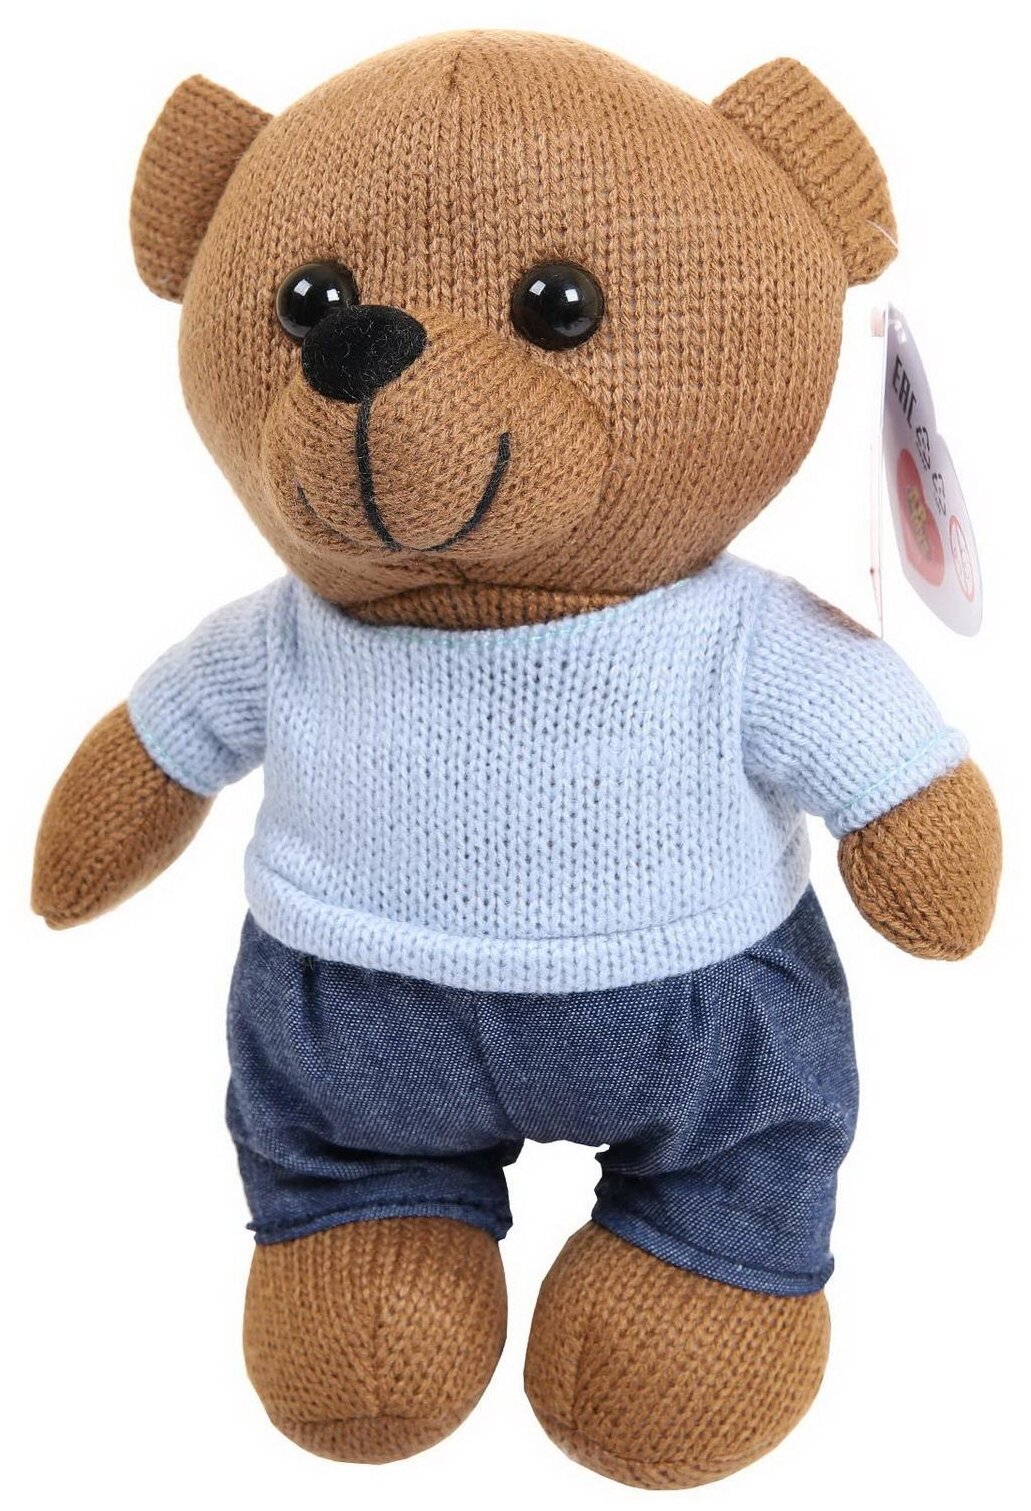 Мягкая игрушка Abtoys Knitted. Мишка мальчик вязаный, 25см в джинсах и свитере M4912